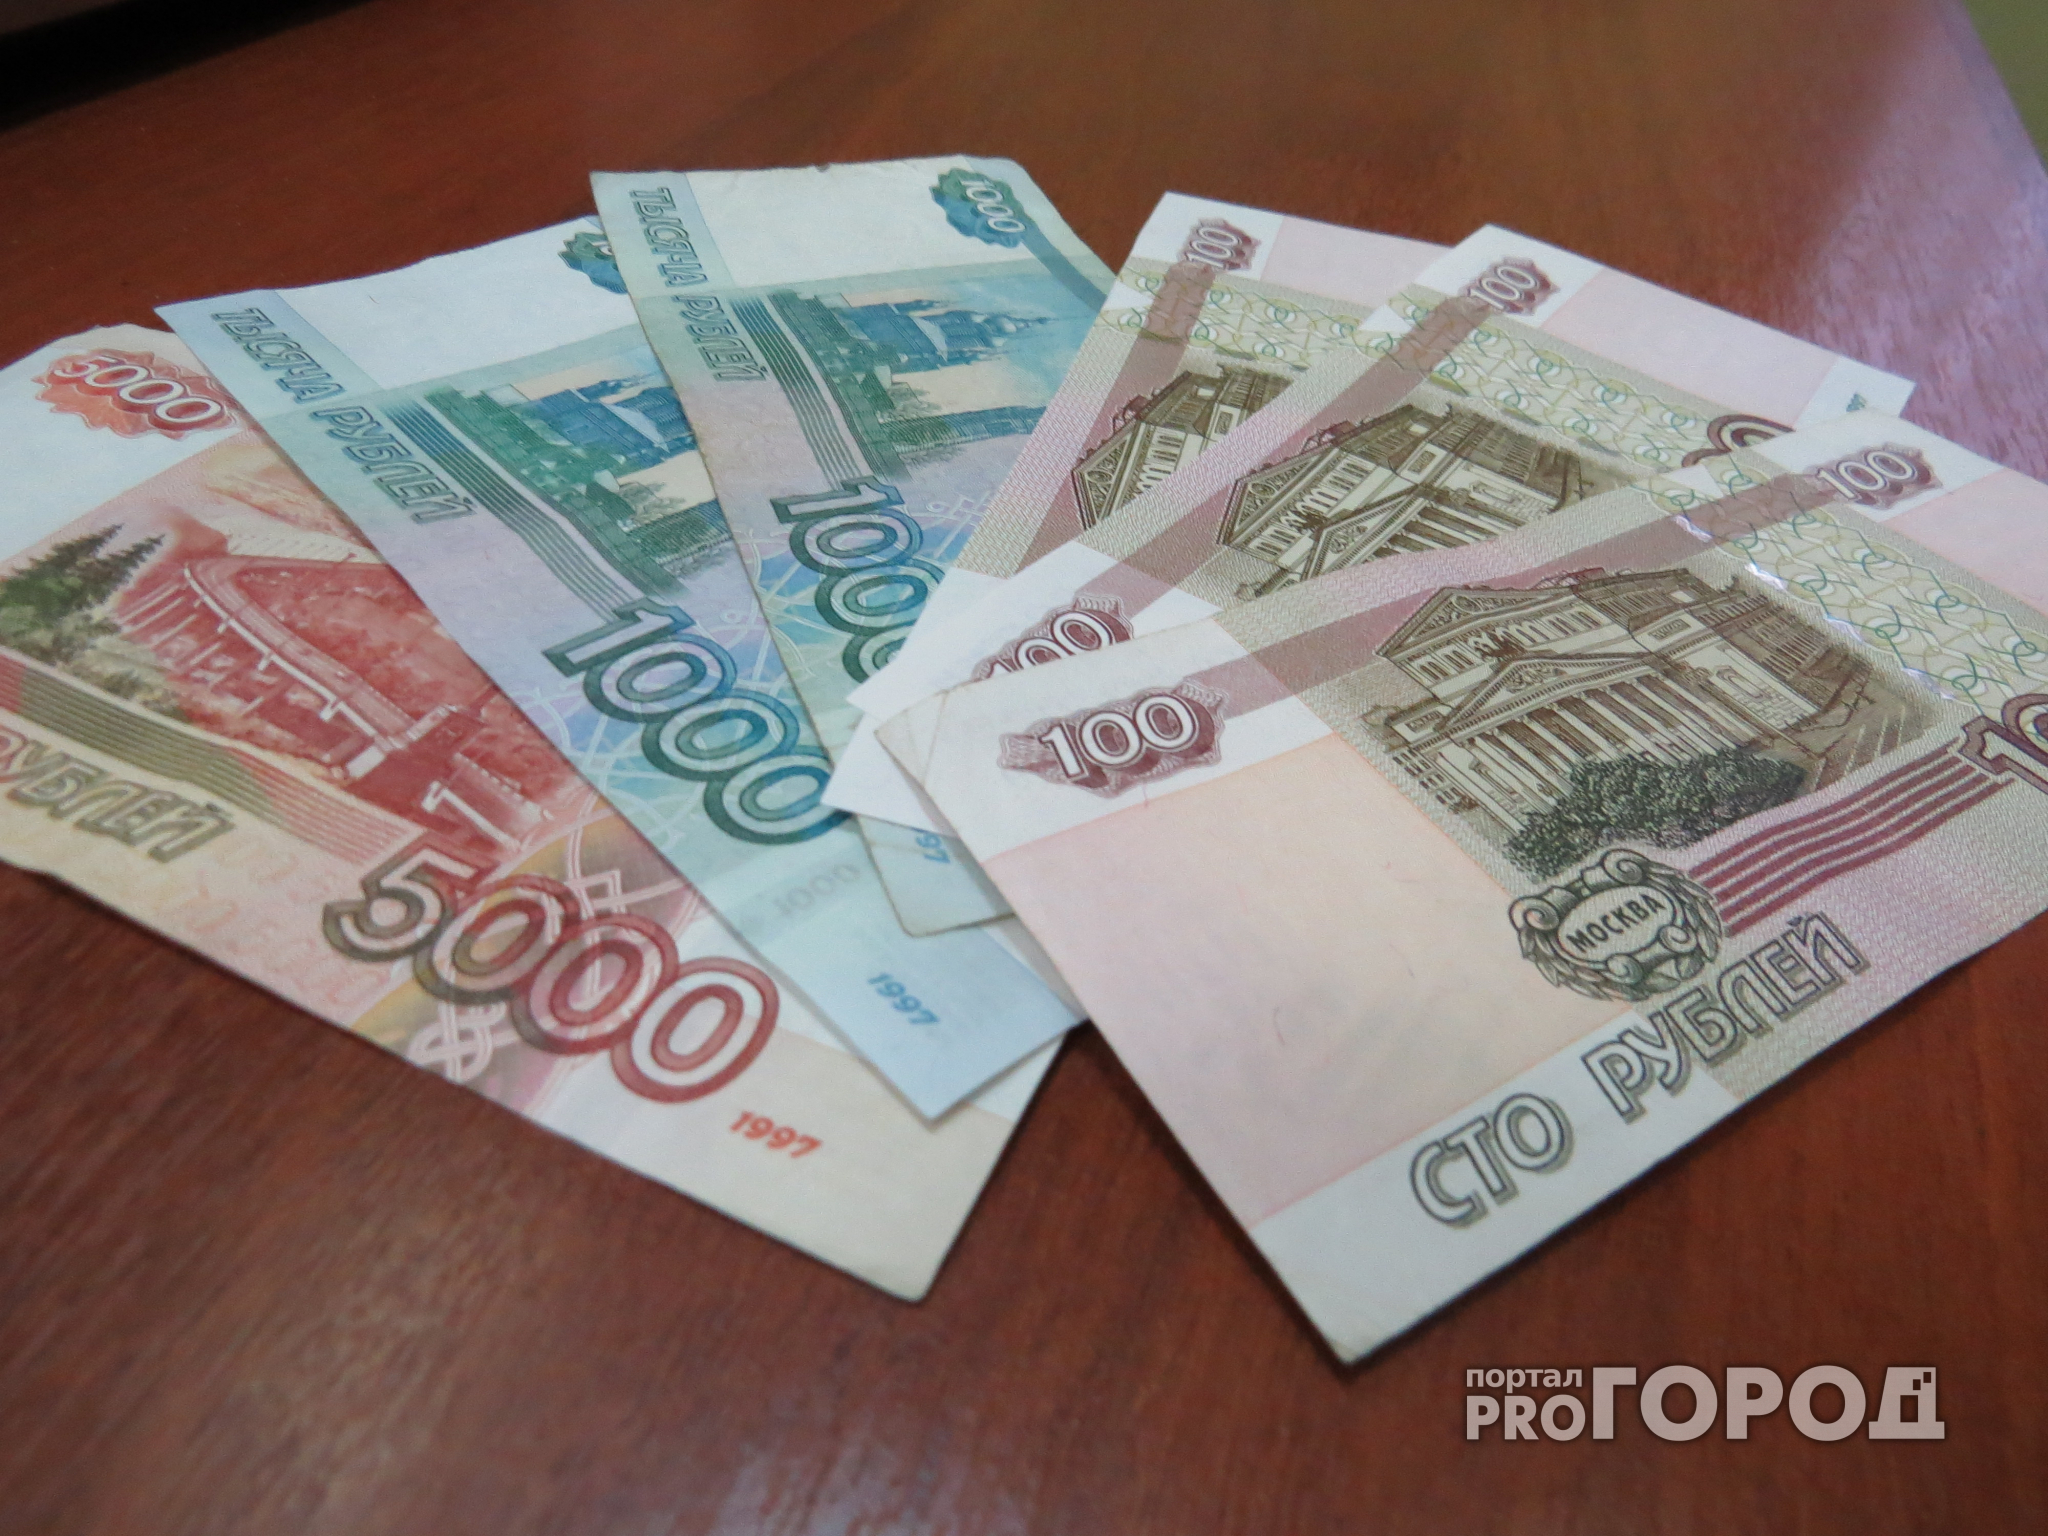 В Пензе пристава-исполнителя осудили за присвоение более 50 тысяч рублей